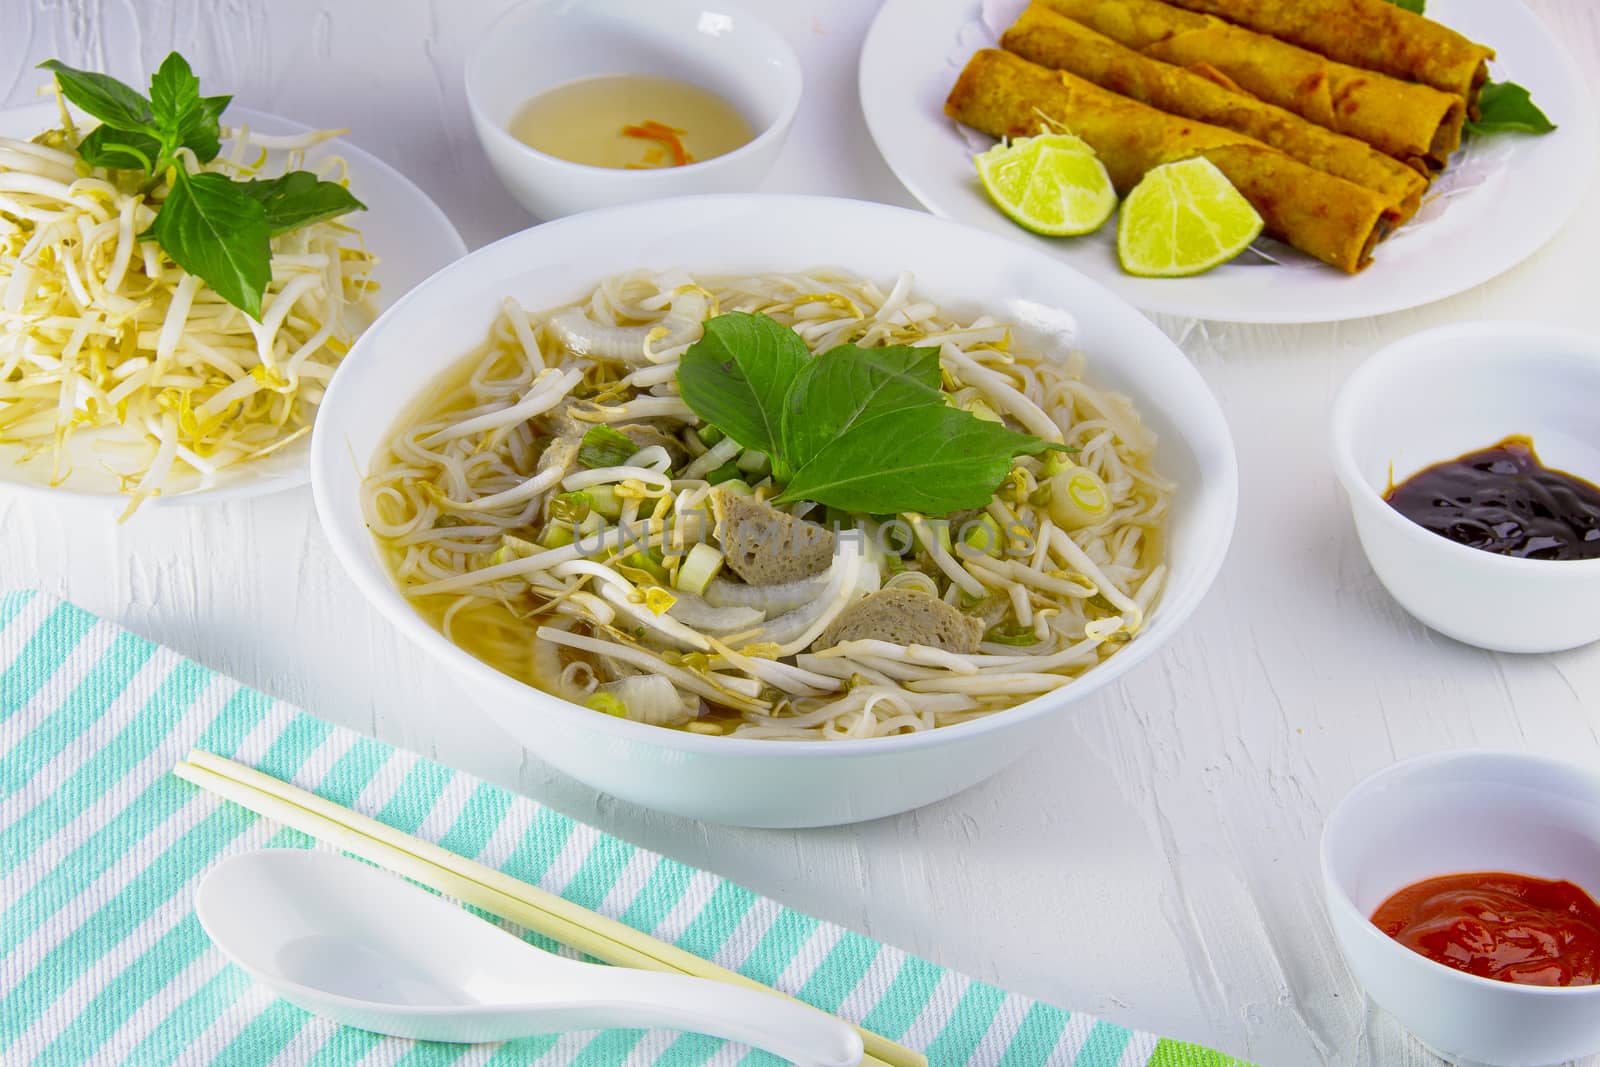 A Pho vietnamese food noodle soup